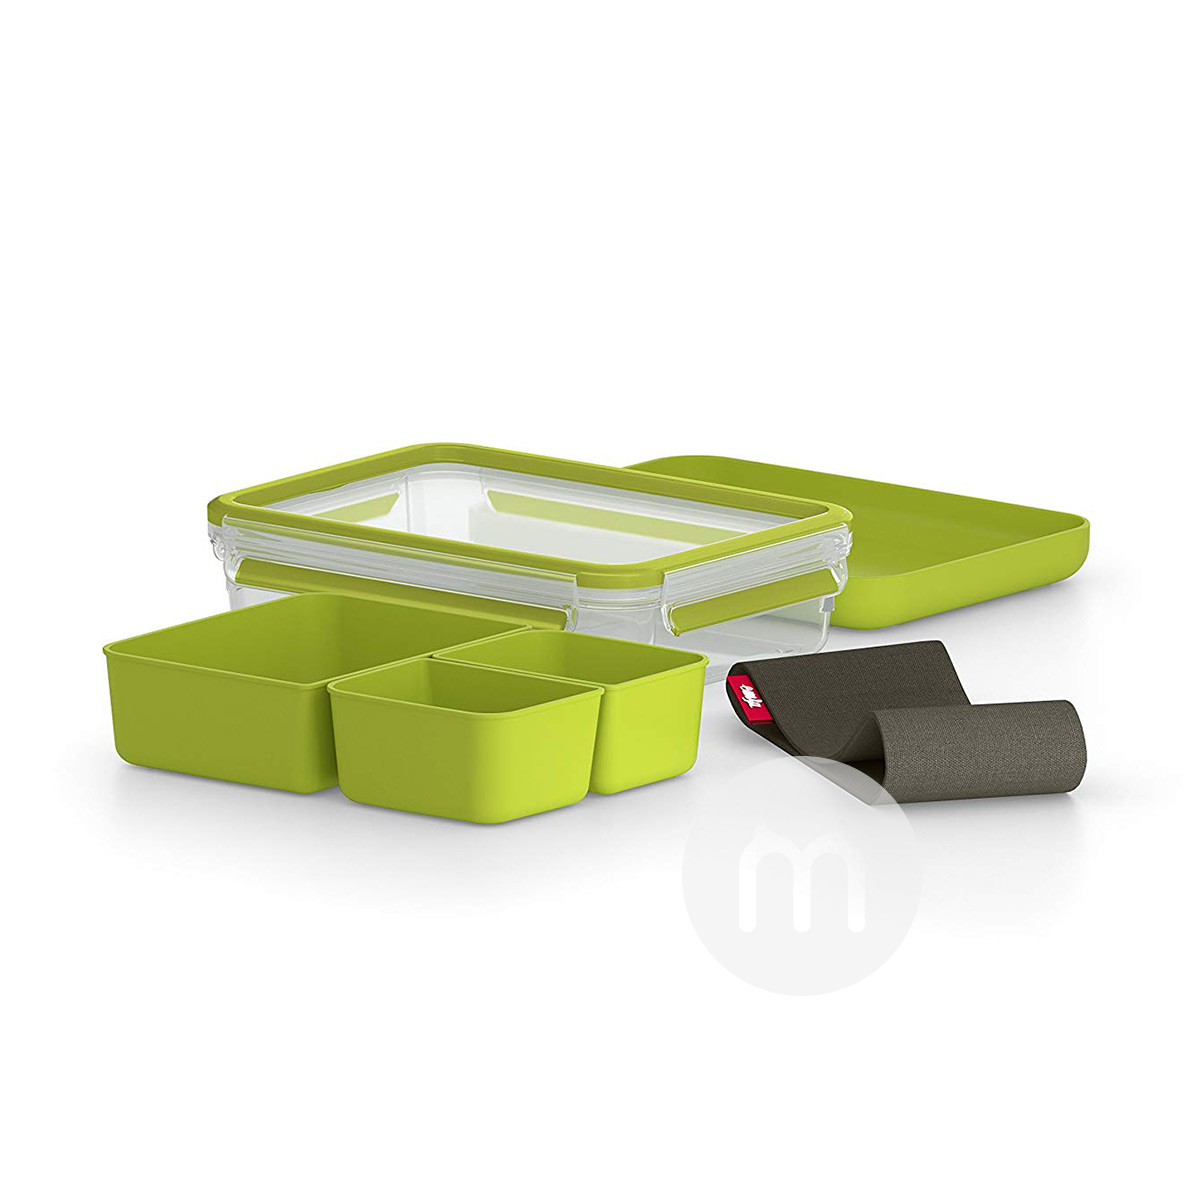 EMSA 德国爱慕莎方形带托盘绿色三格保鲜盒 1.2L 海外本土原版